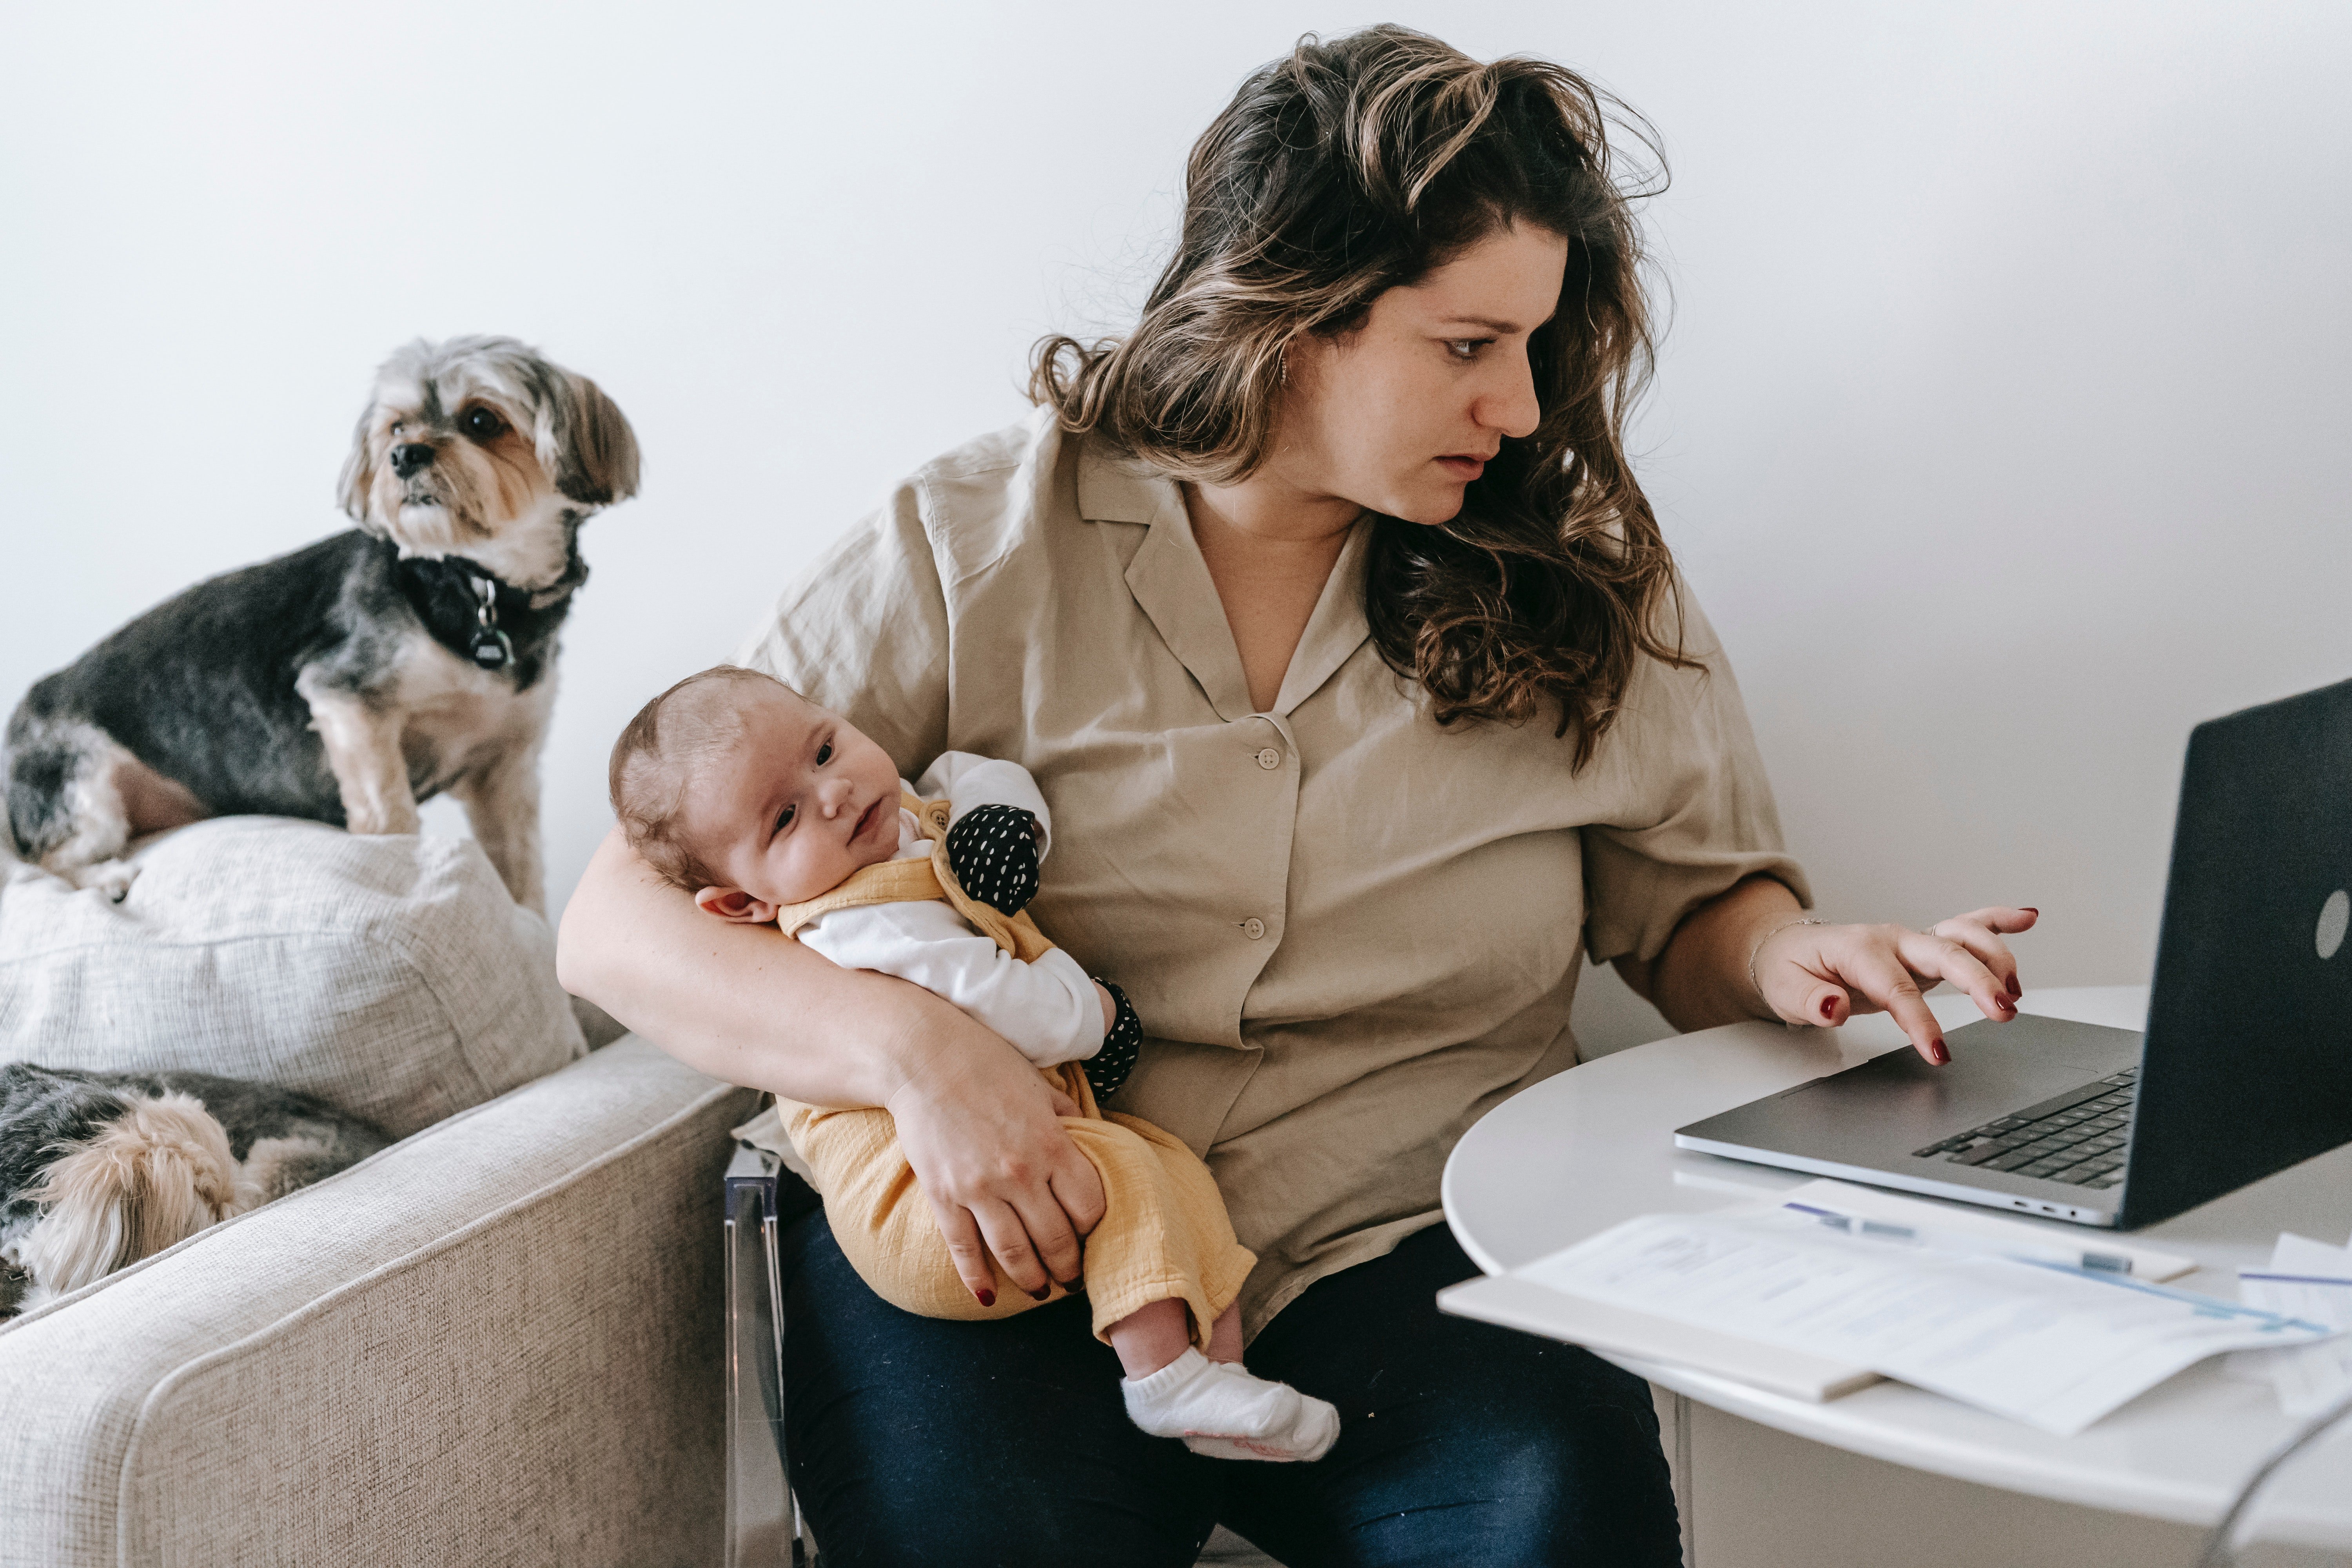 Madre con bebé revisando las redes. | Foto: Shutterstock